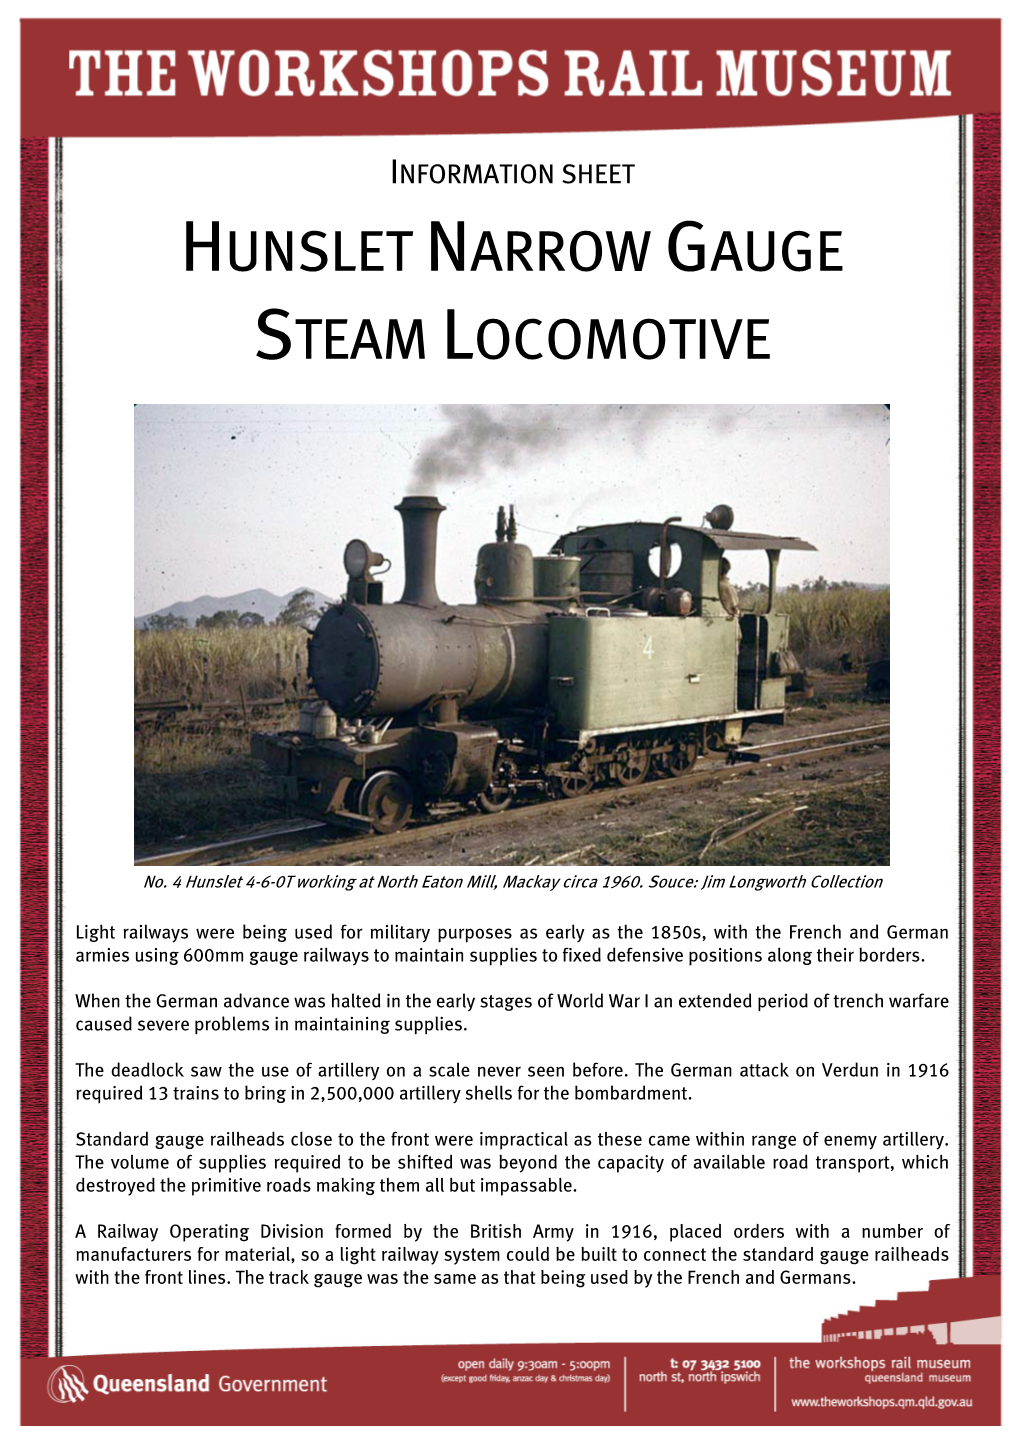 Hunslet Narrow Gauge Steam Locomotive Fact Sheet